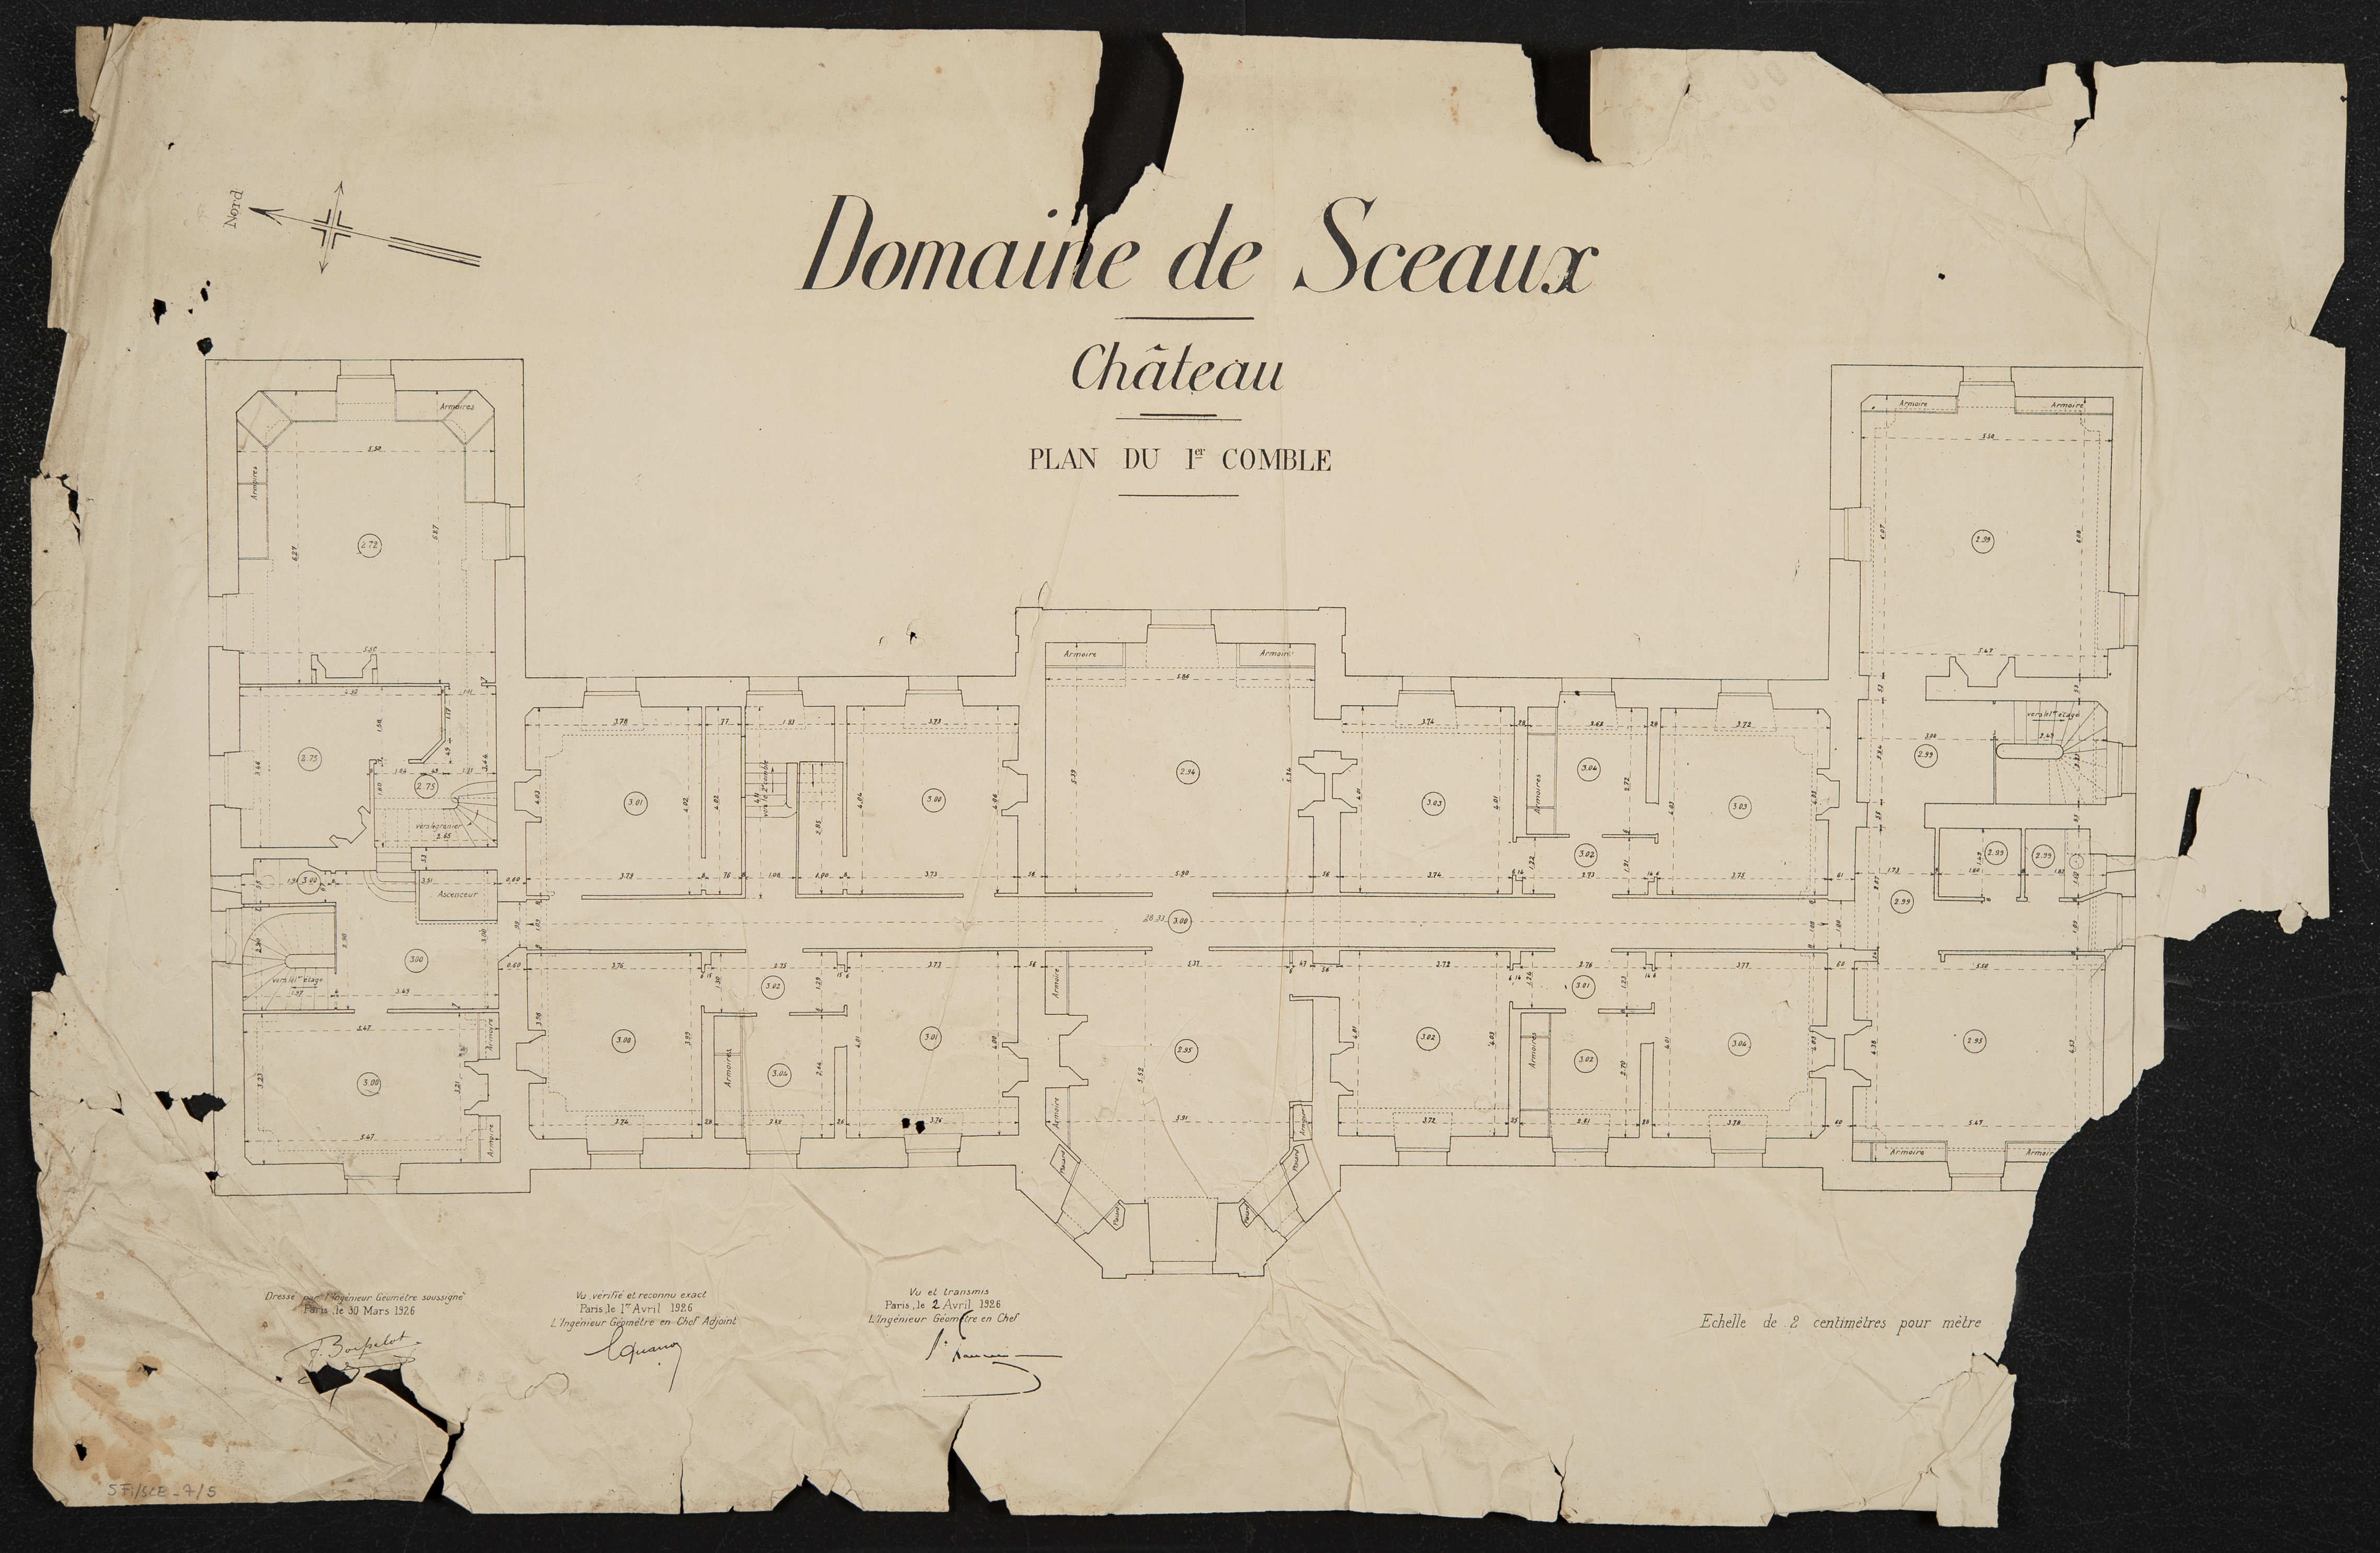 Domaine de Sceaux : château : plan du 1er comble. 1926.